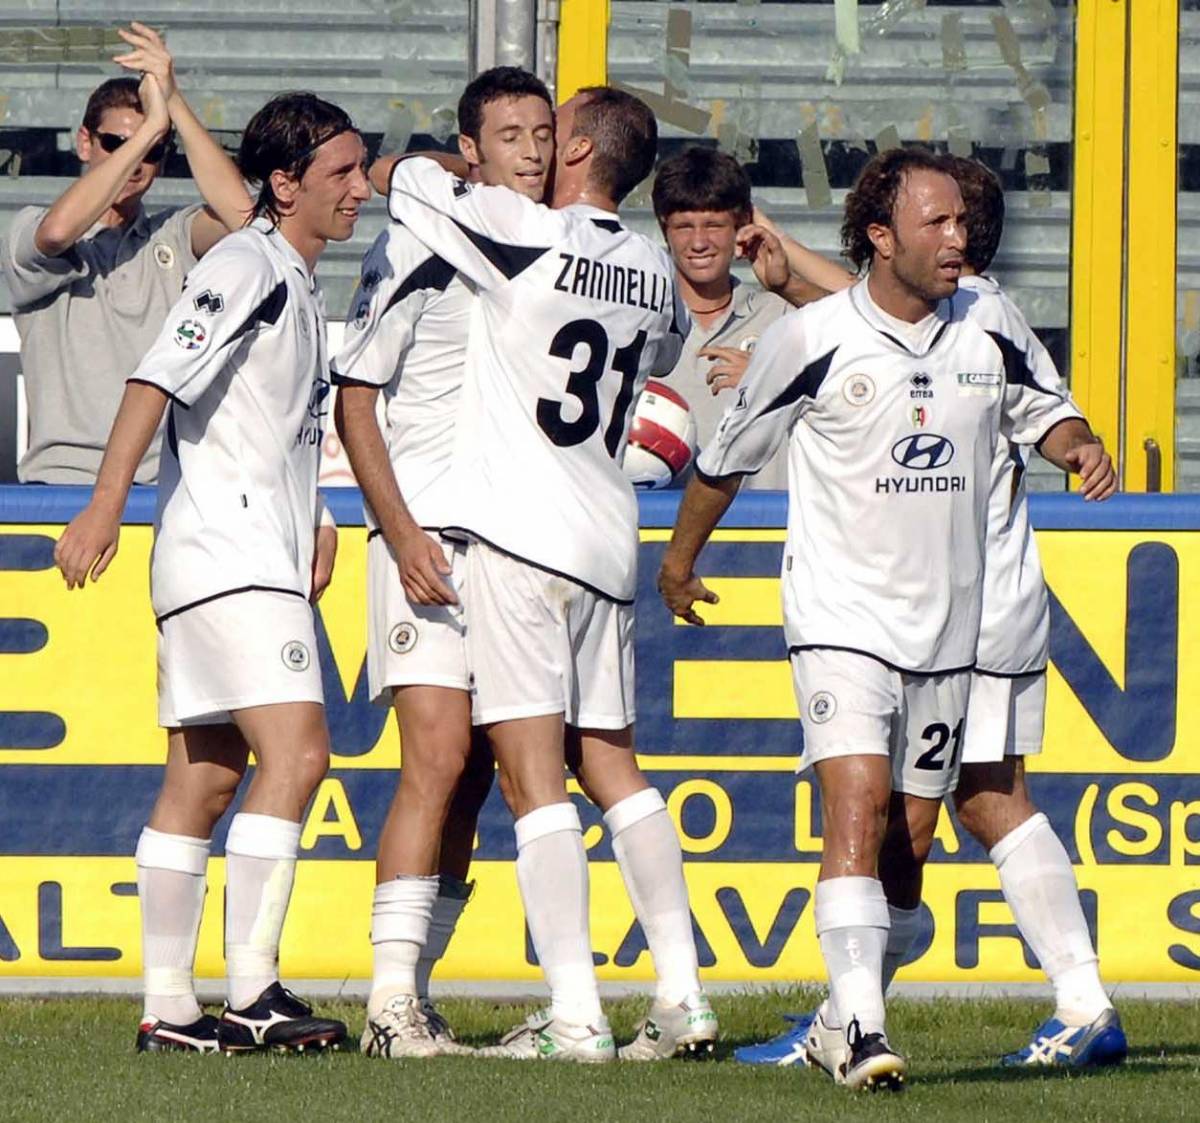 Lo Spezia strapazza il Treviso 5-2